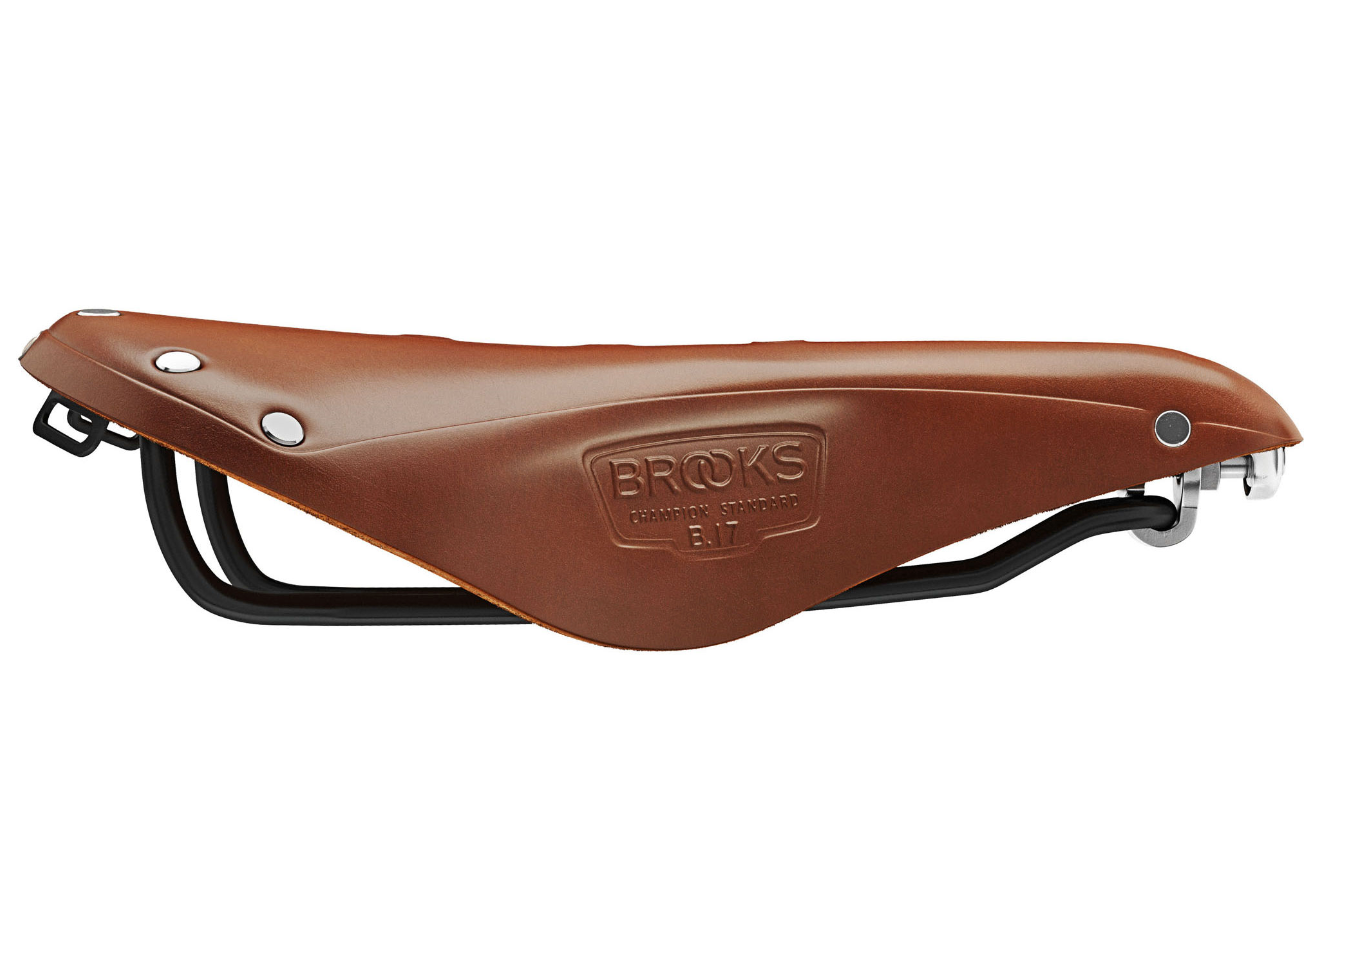 Brooks B17 Honey saddle